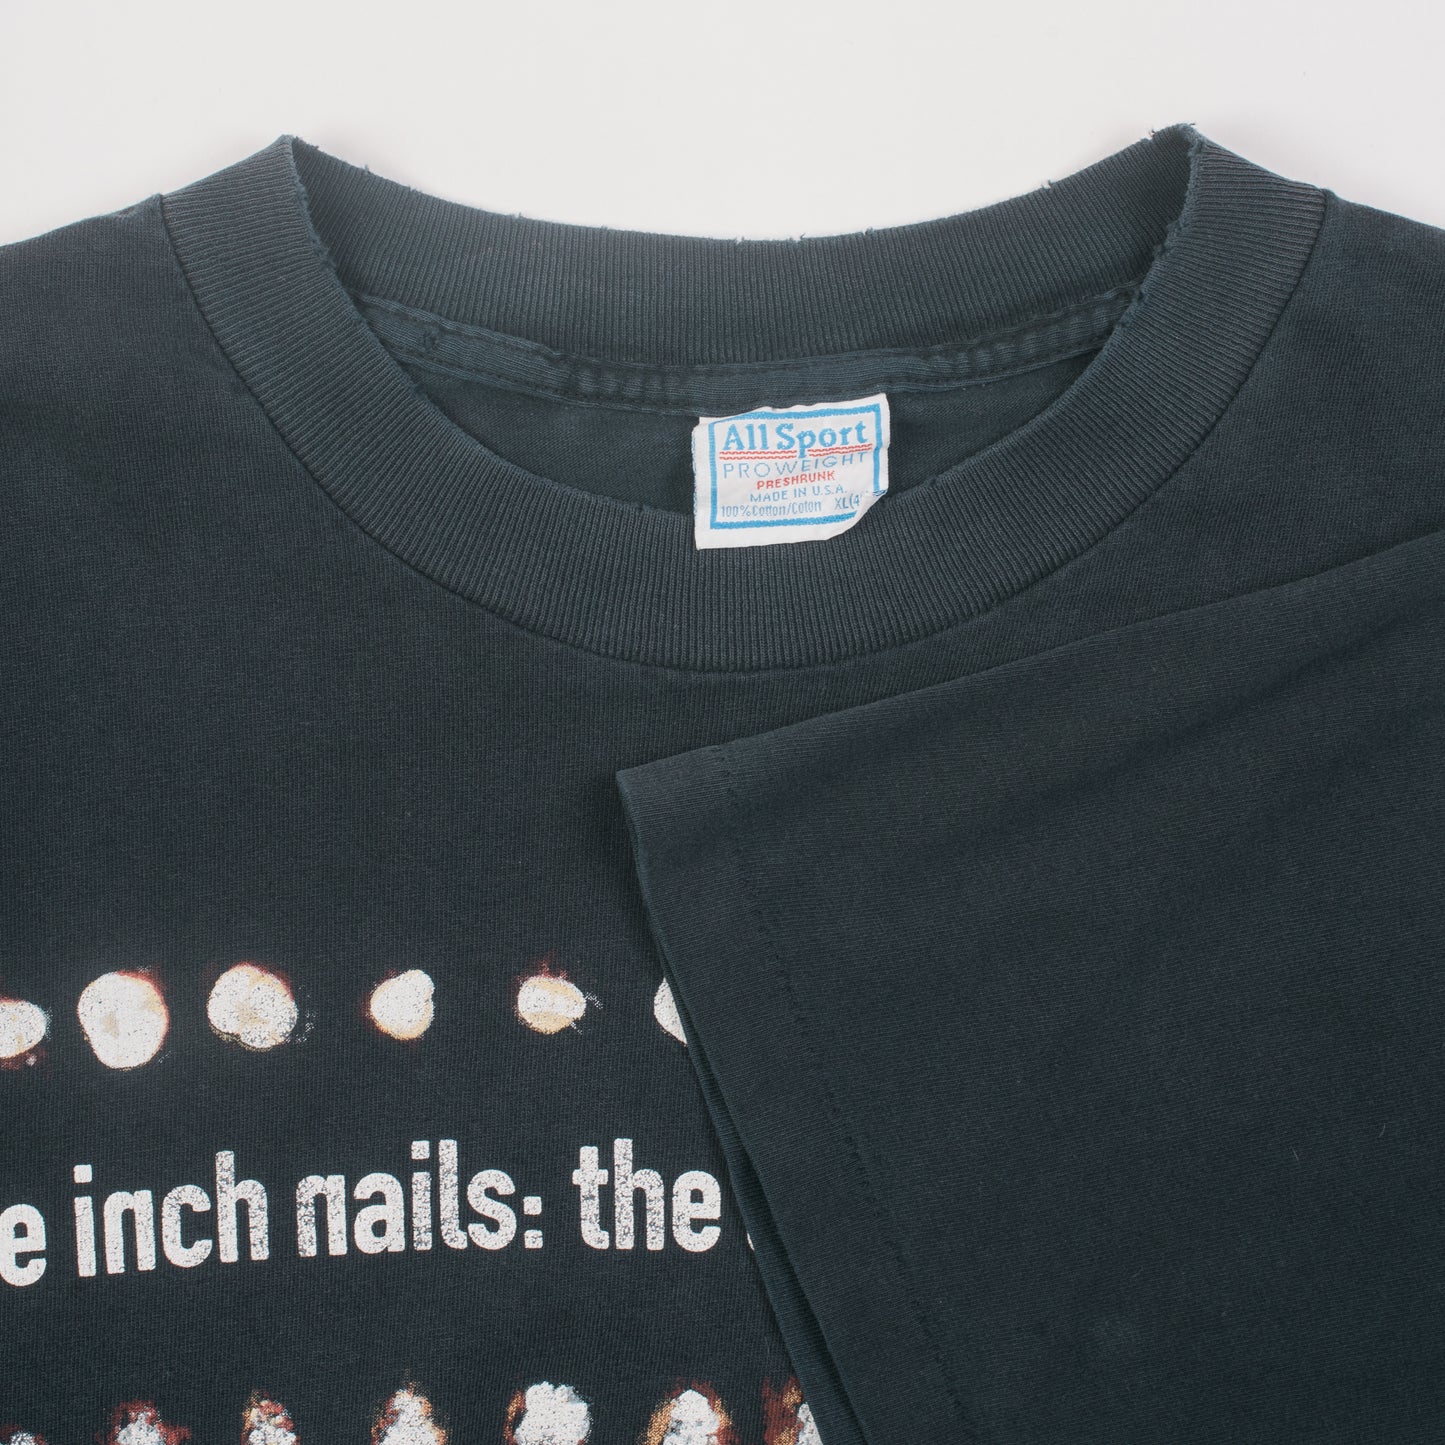 Vintage 1995 Nine Inch Nails The Downward Spiral T-Shirt